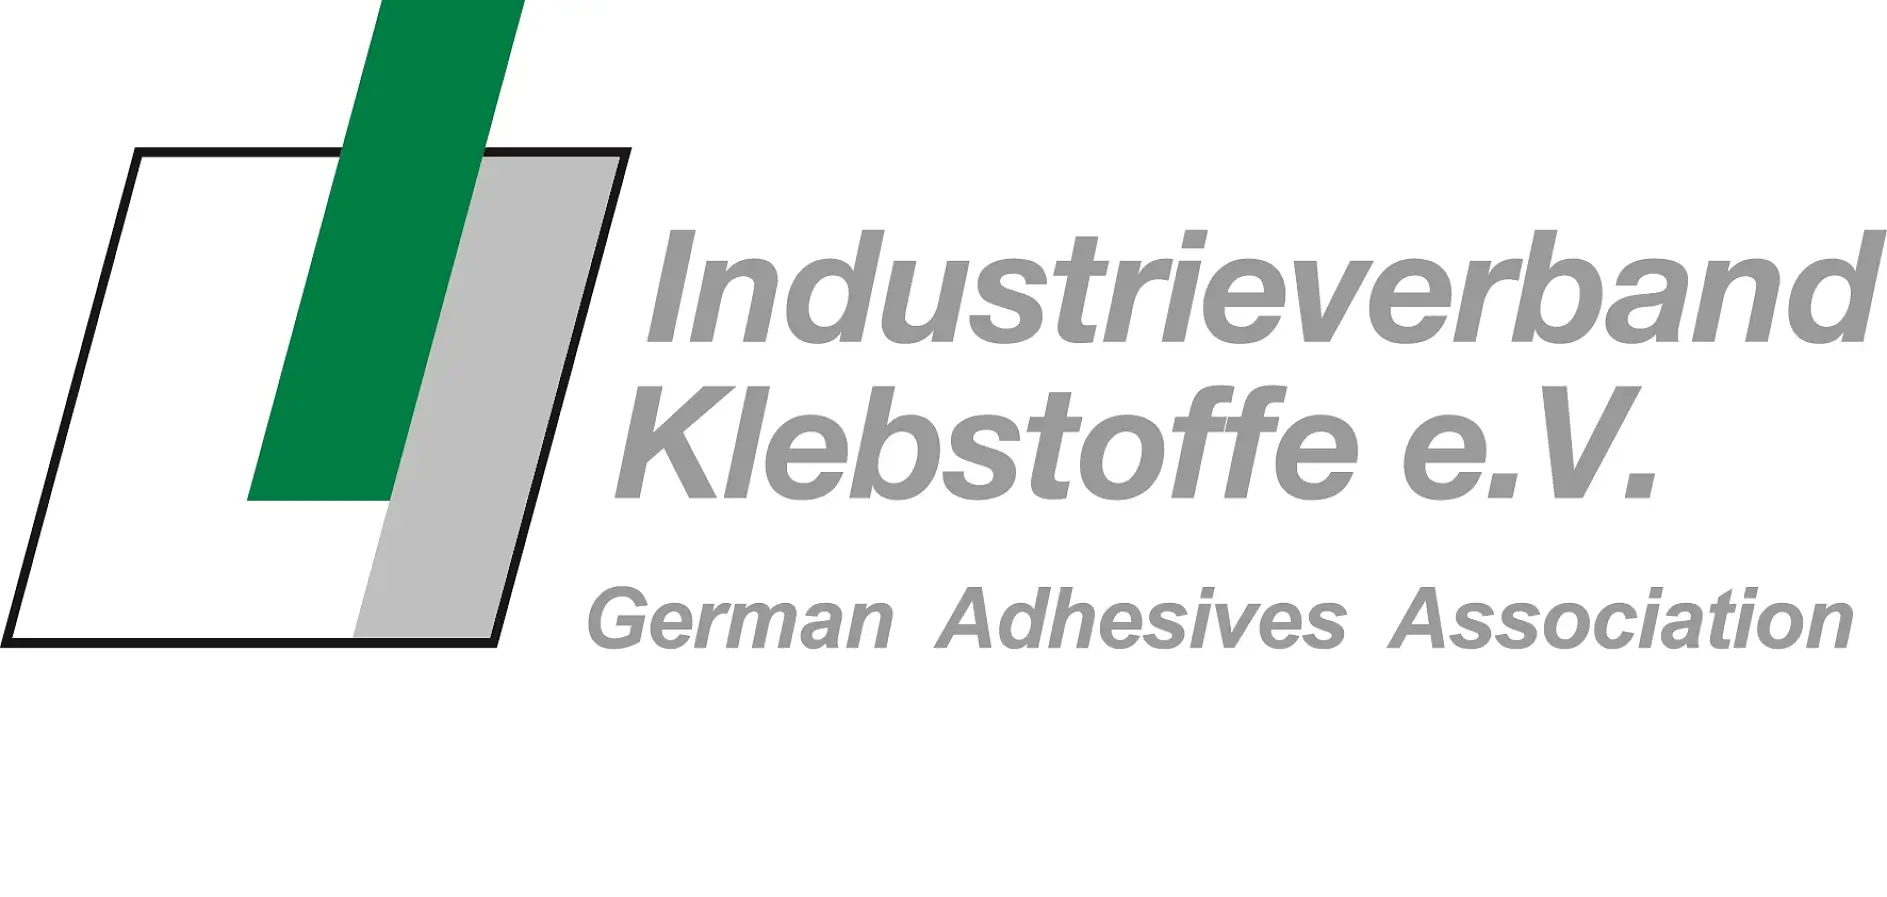 De Duitse federatie voor kleefstoffen is de grootste nationale organisatie op het gebied van lijmtechnieken ter wereld en met zijn brede serviceaanbod tegelijkertijd ook de meest toonaangevende.